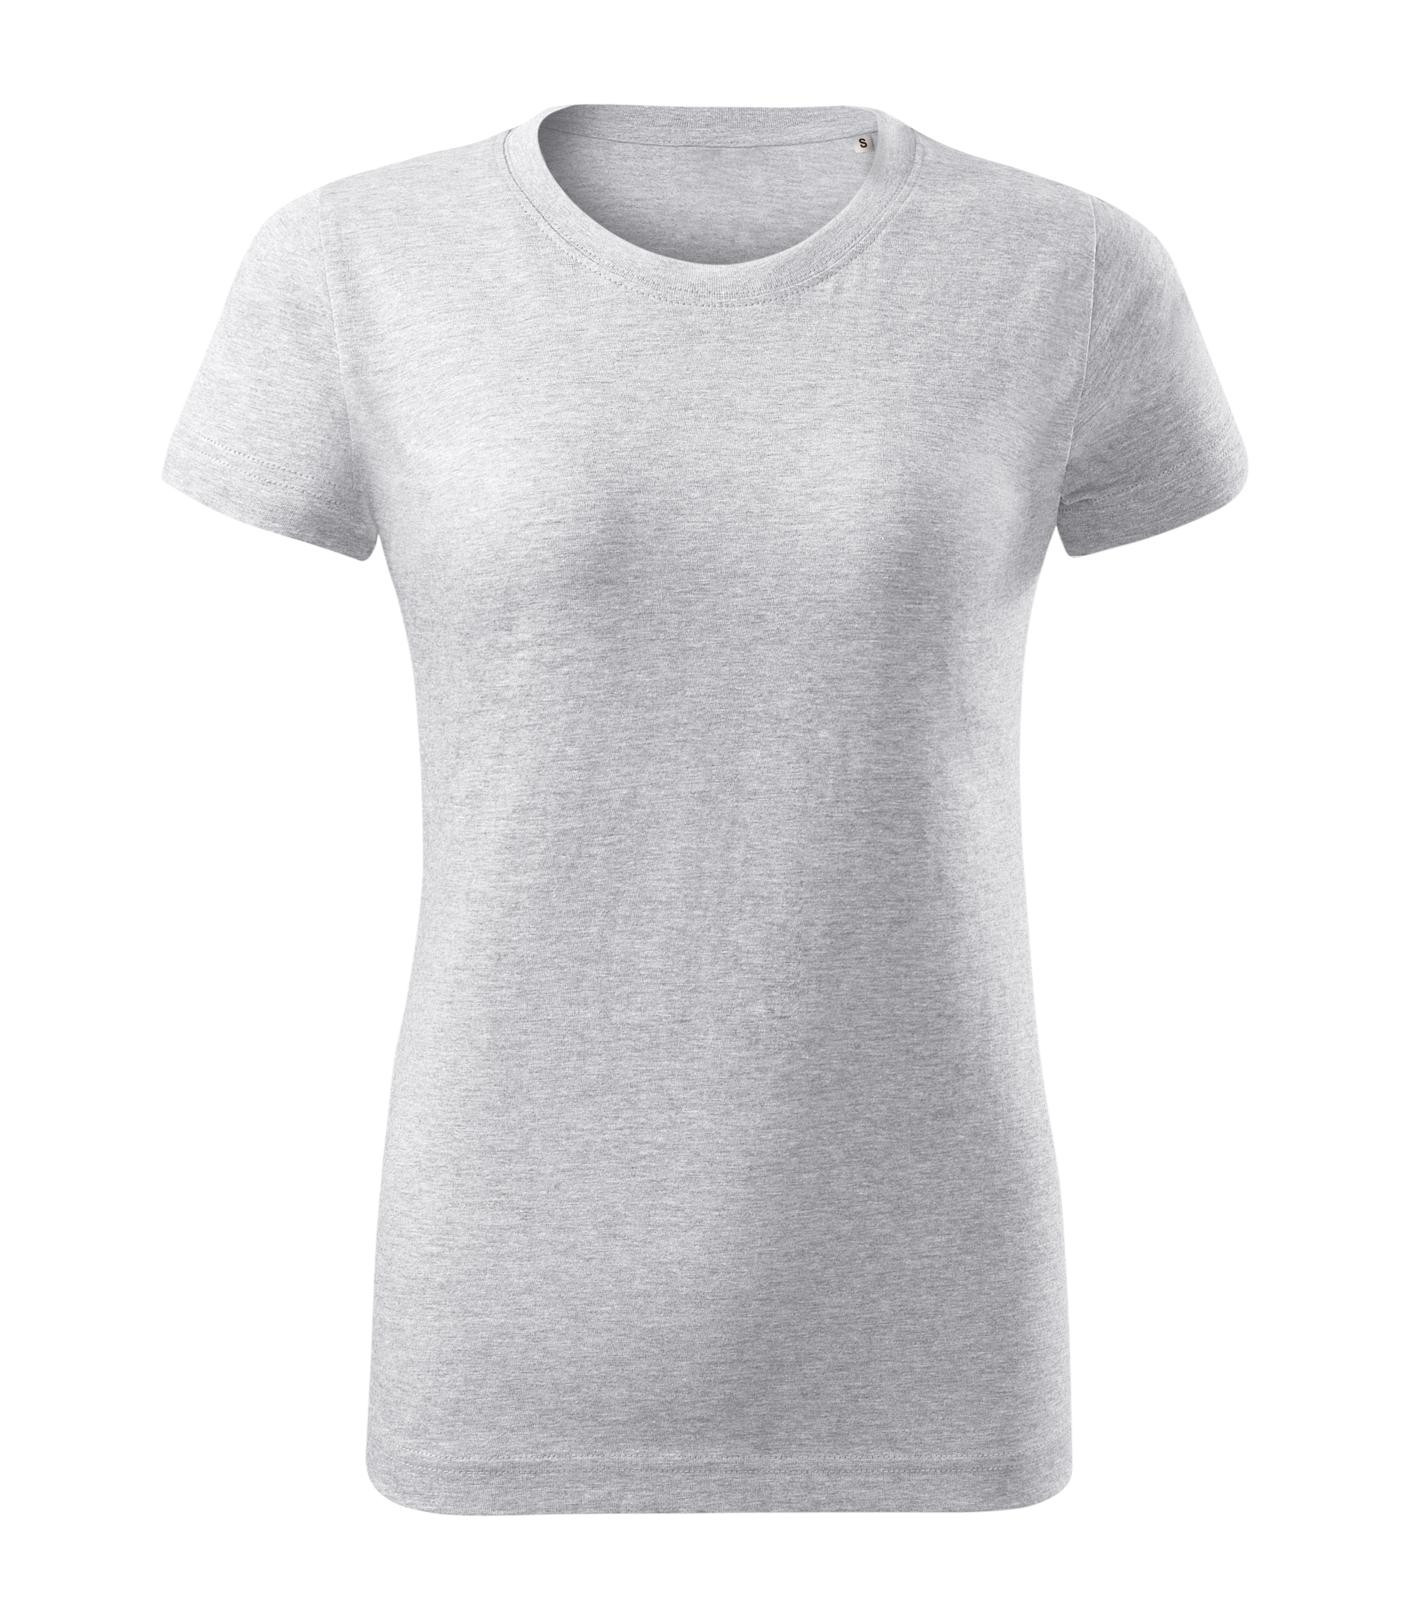 Dámske tričko Malini Basic Free F34 - veľkosť: XXL, farba: svetlosivý melír